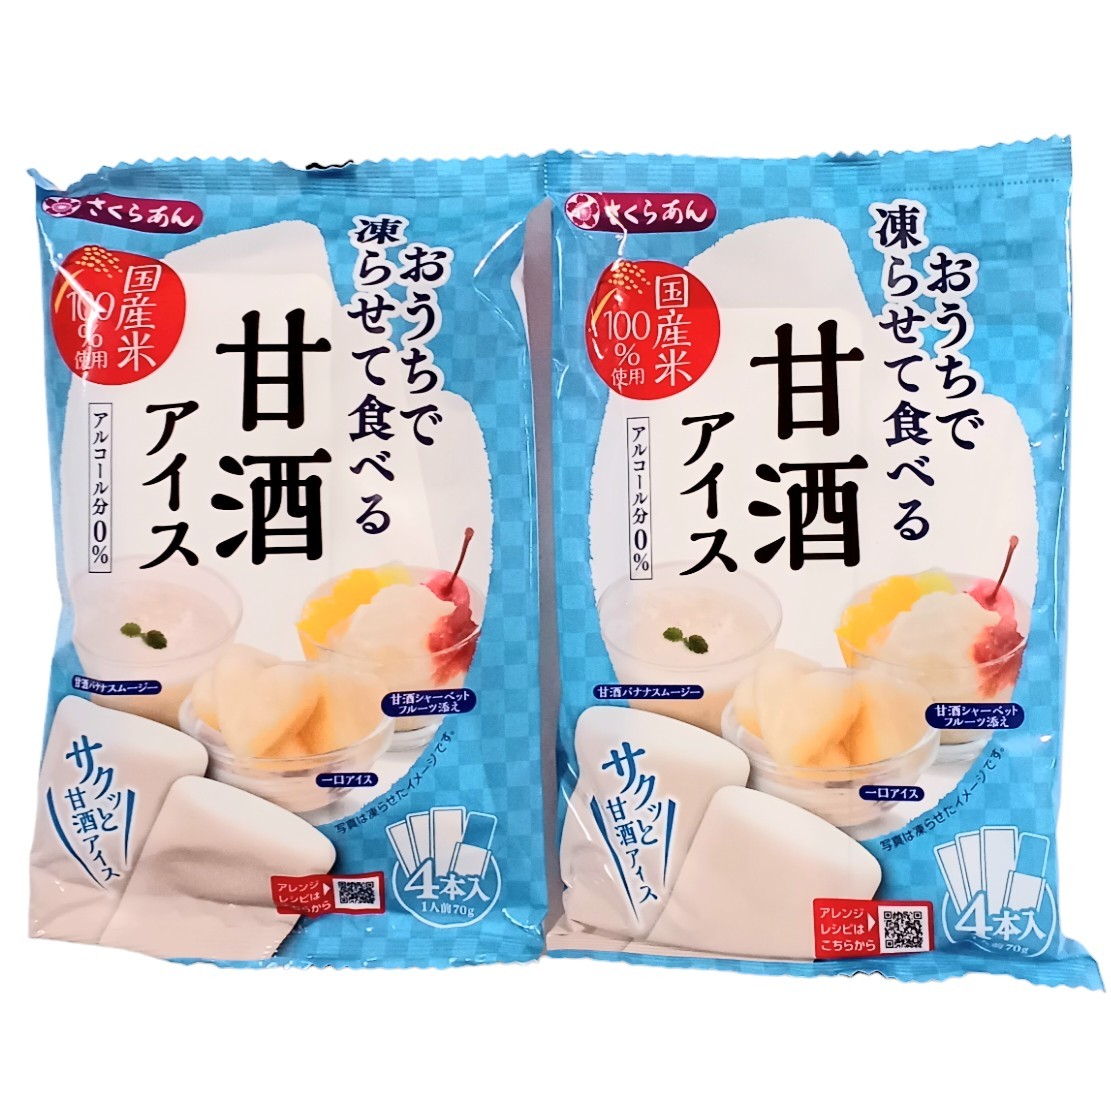 おうちで凍らせて食べる 甘酒アイス (70g×4本入) ×2袋セットの画像1